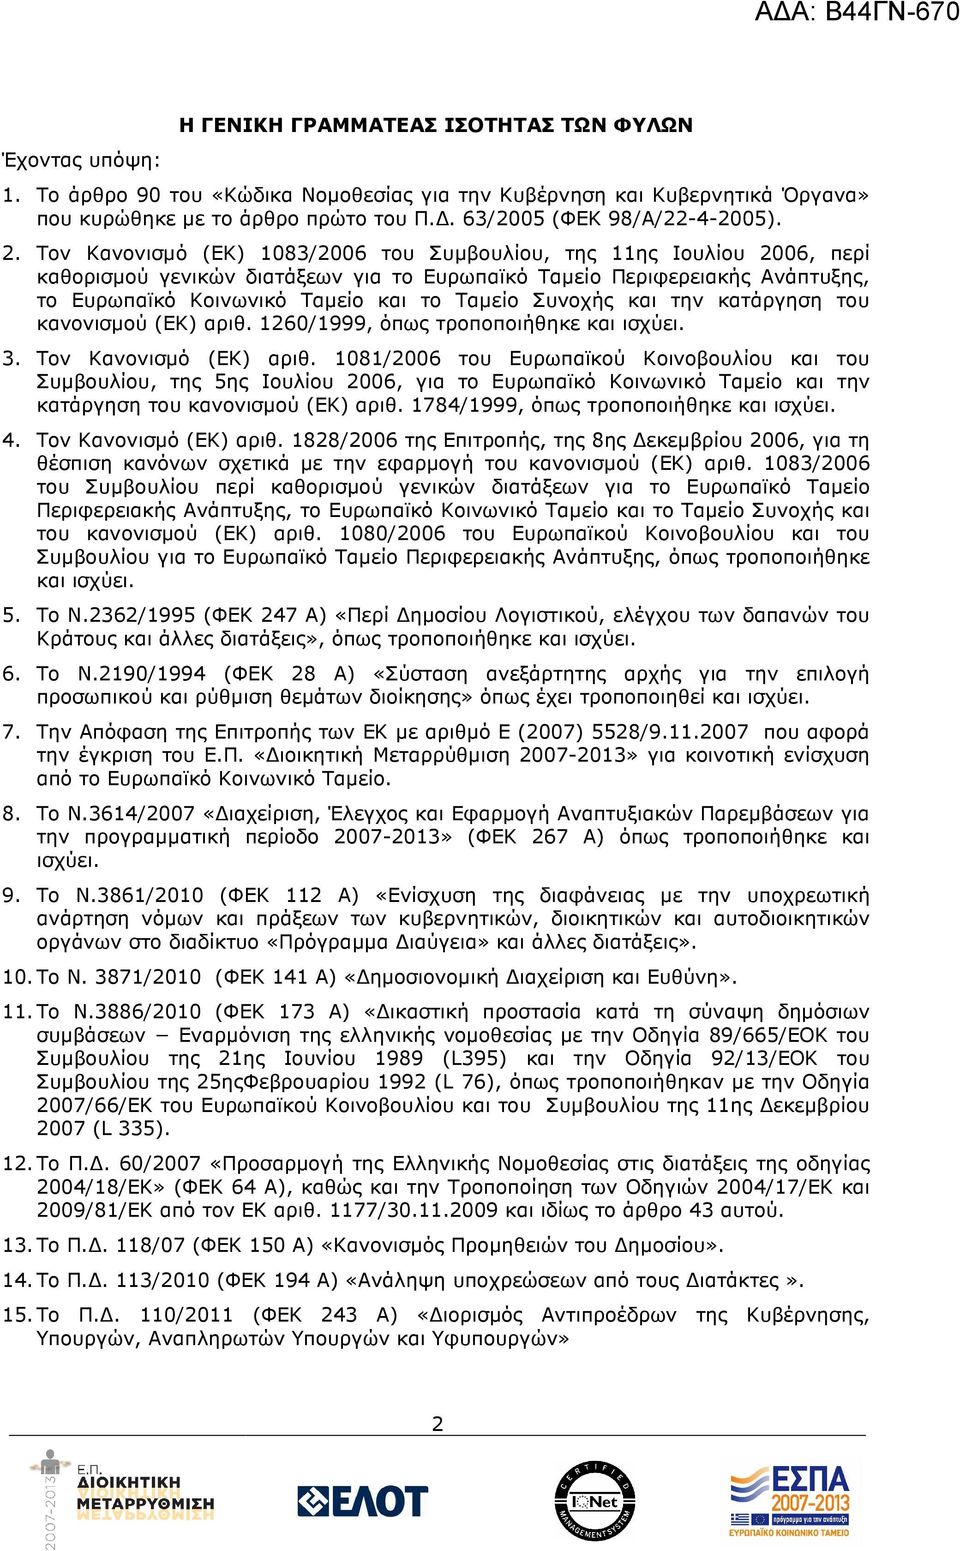 Τον Κανονισµό (ΕΚ) 1083/2006 του Συµβουλίου, της 11ης Ιουλίου 2006, περί καθορισµού γενικών διατάξεων για το Ευρωπαϊκό Ταµείο Περιφερειακής Ανάπτυξης, το Ευρωπαϊκό Κοινωνικό Ταµείο και το Ταµείο